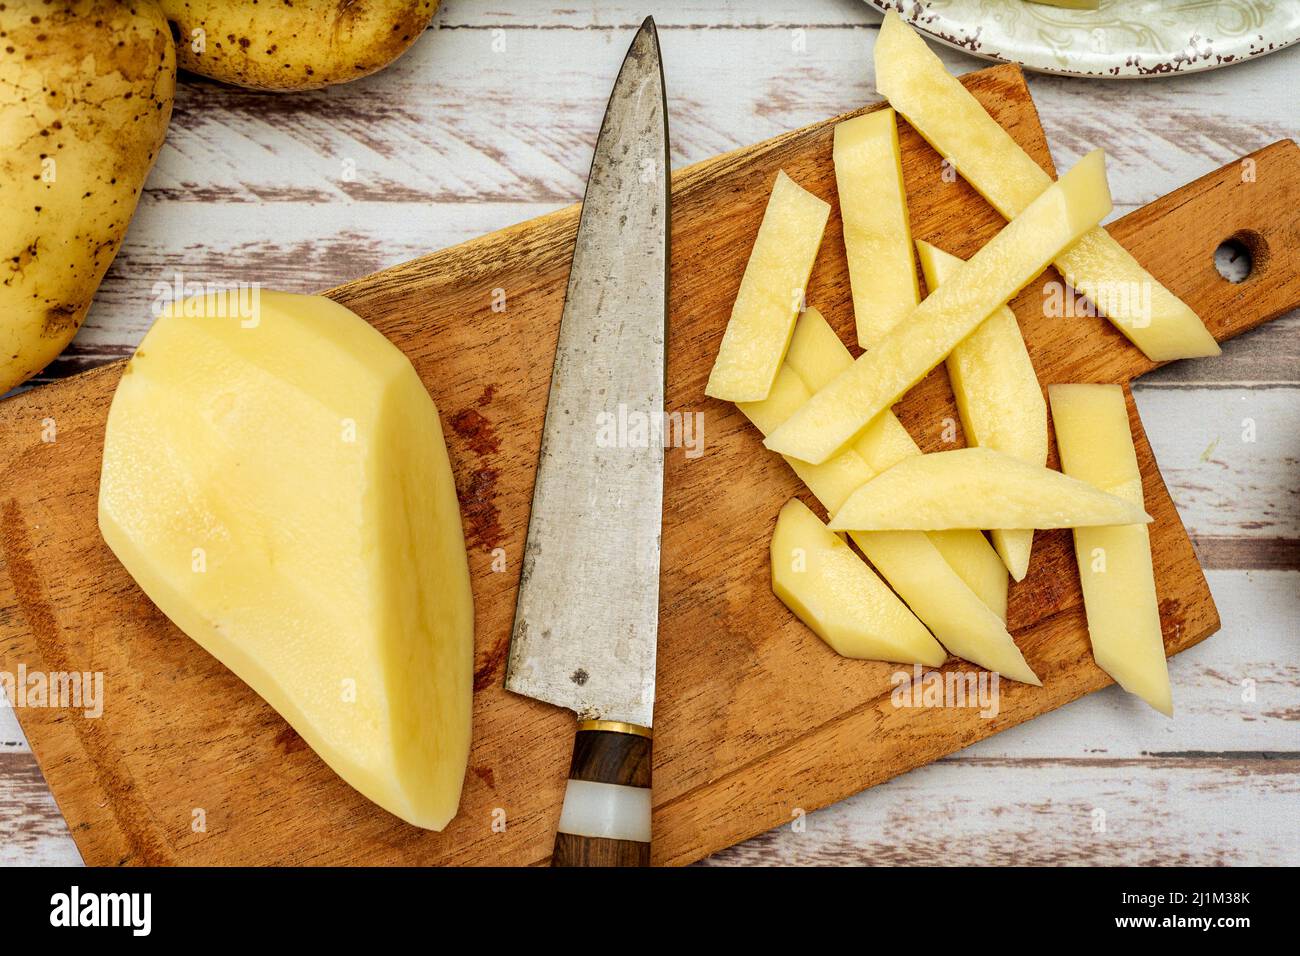 Planche à découper en bois avec pomme de terre coupée en bâton pour faire des frites. Une demi-pomme de terre pelée et un couteau sur une table rustique. Vue de dessus. Banque D'Images